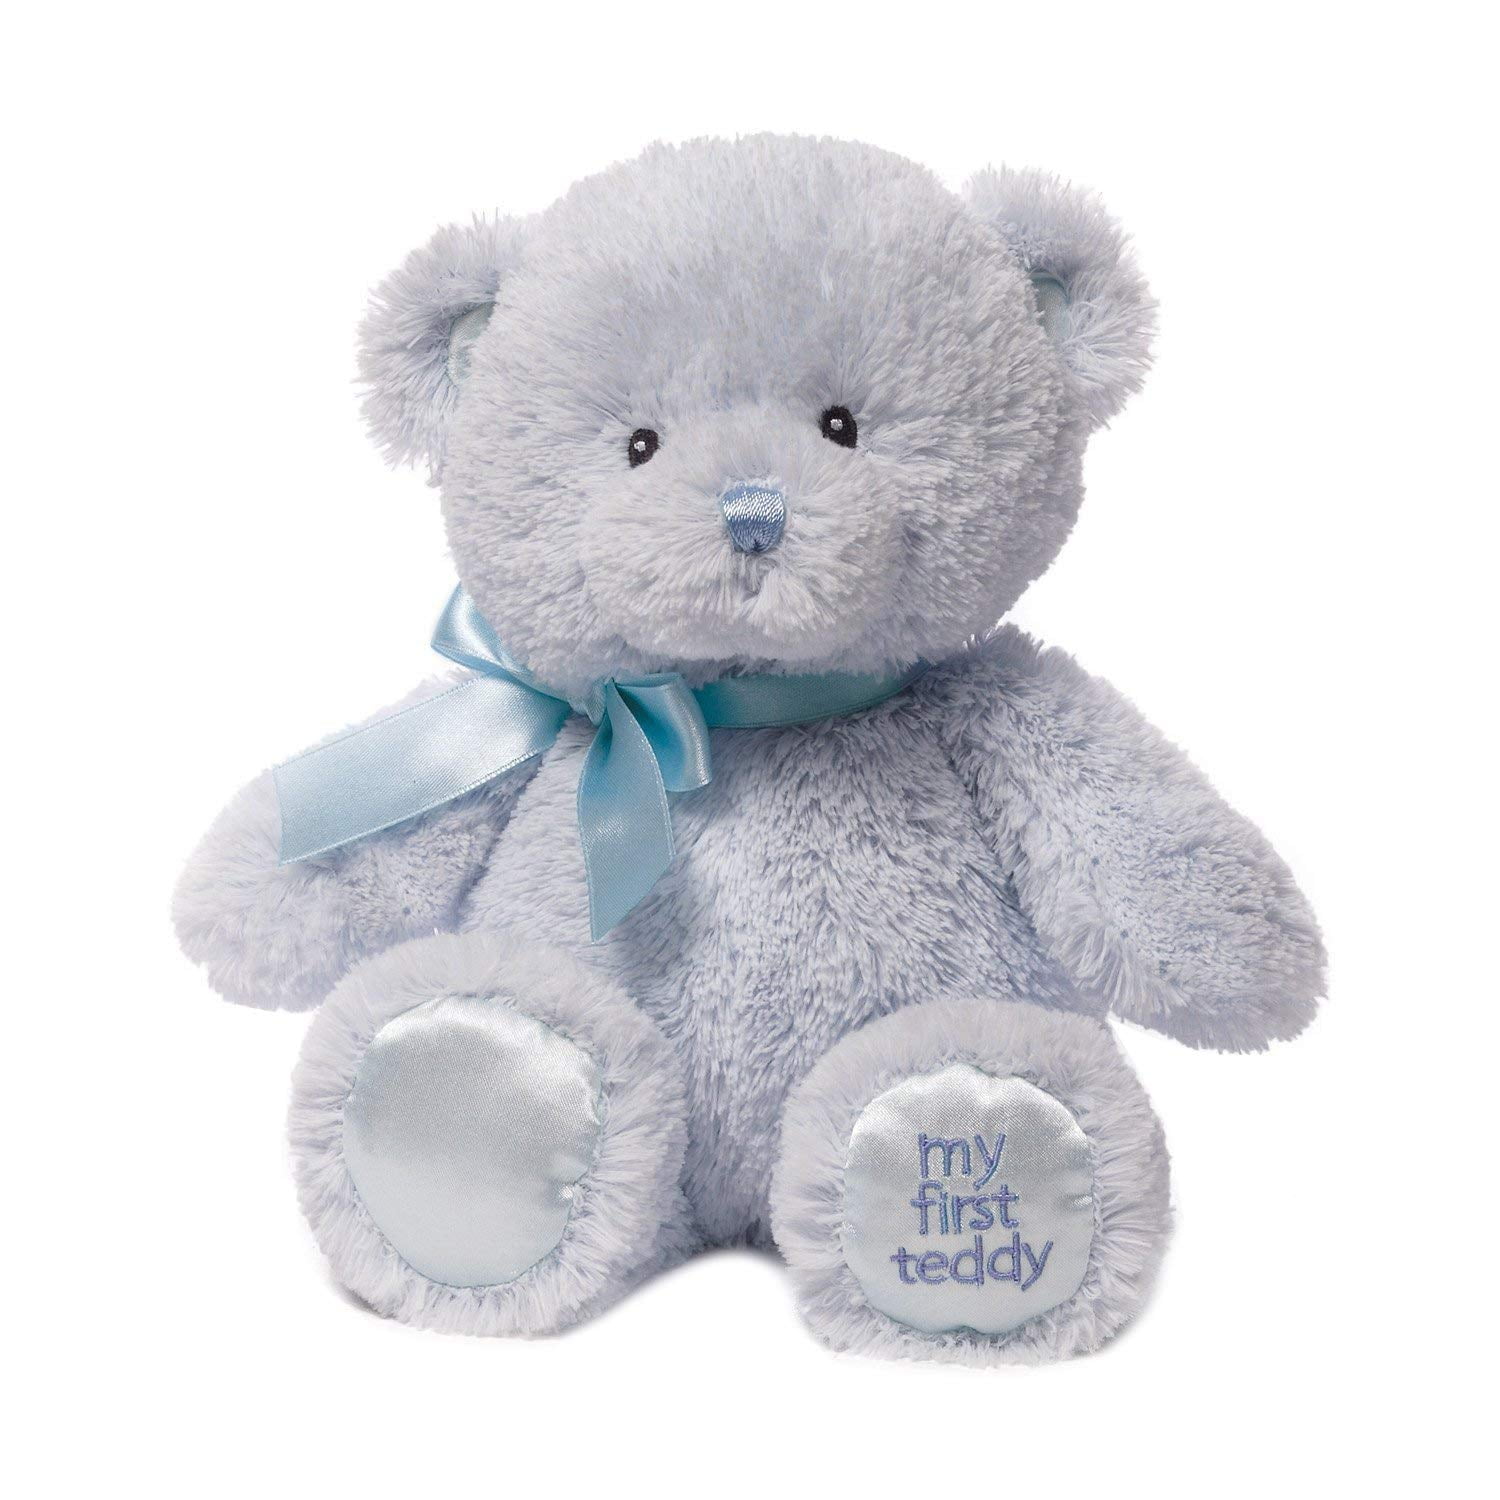 10 inches Gund My First Teddy Bear Baby Stuffed Animal 